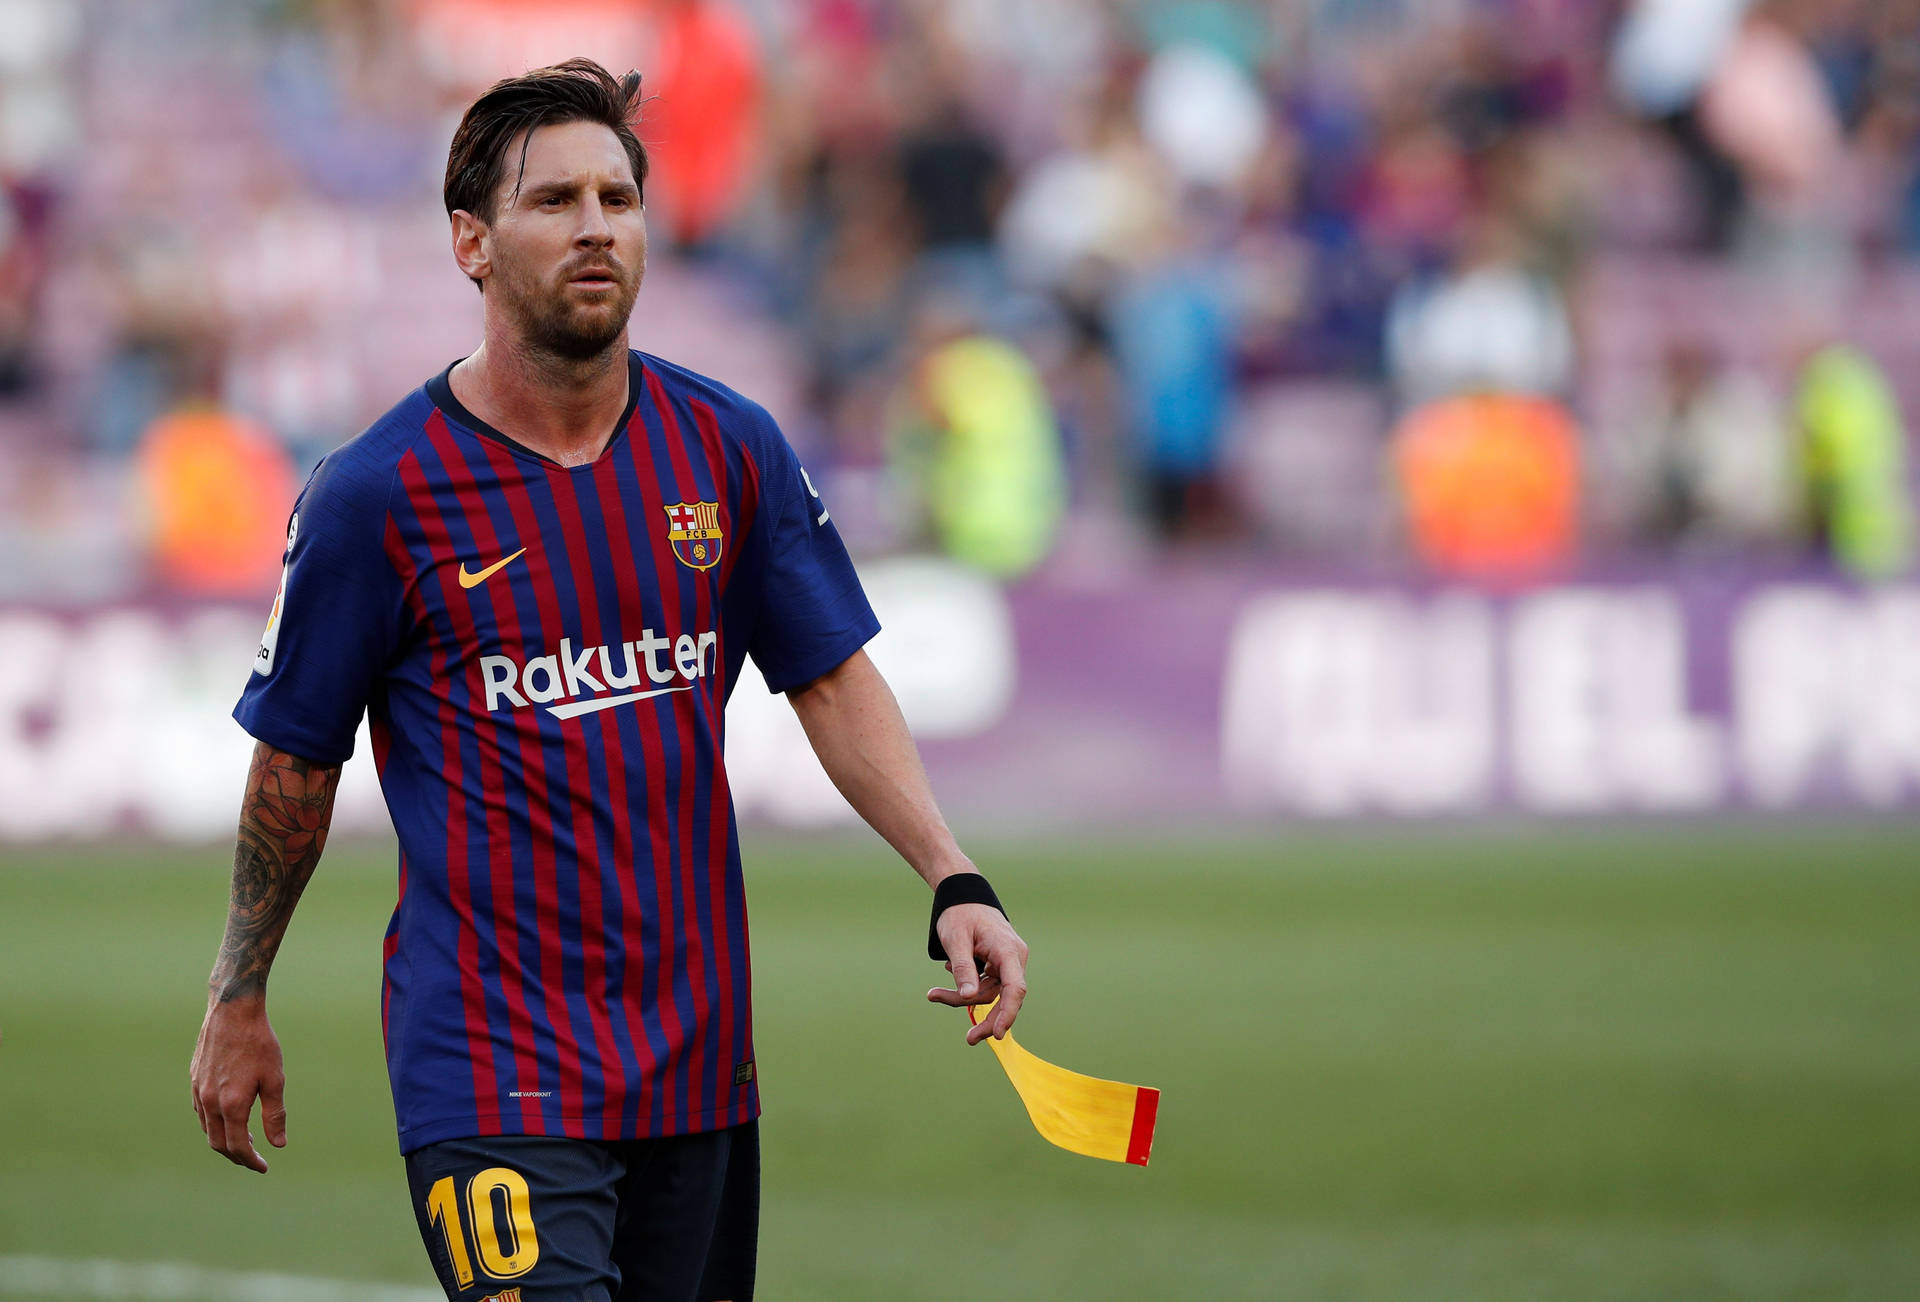 Lionel Messi 2020 Walking On Field Wallpaper